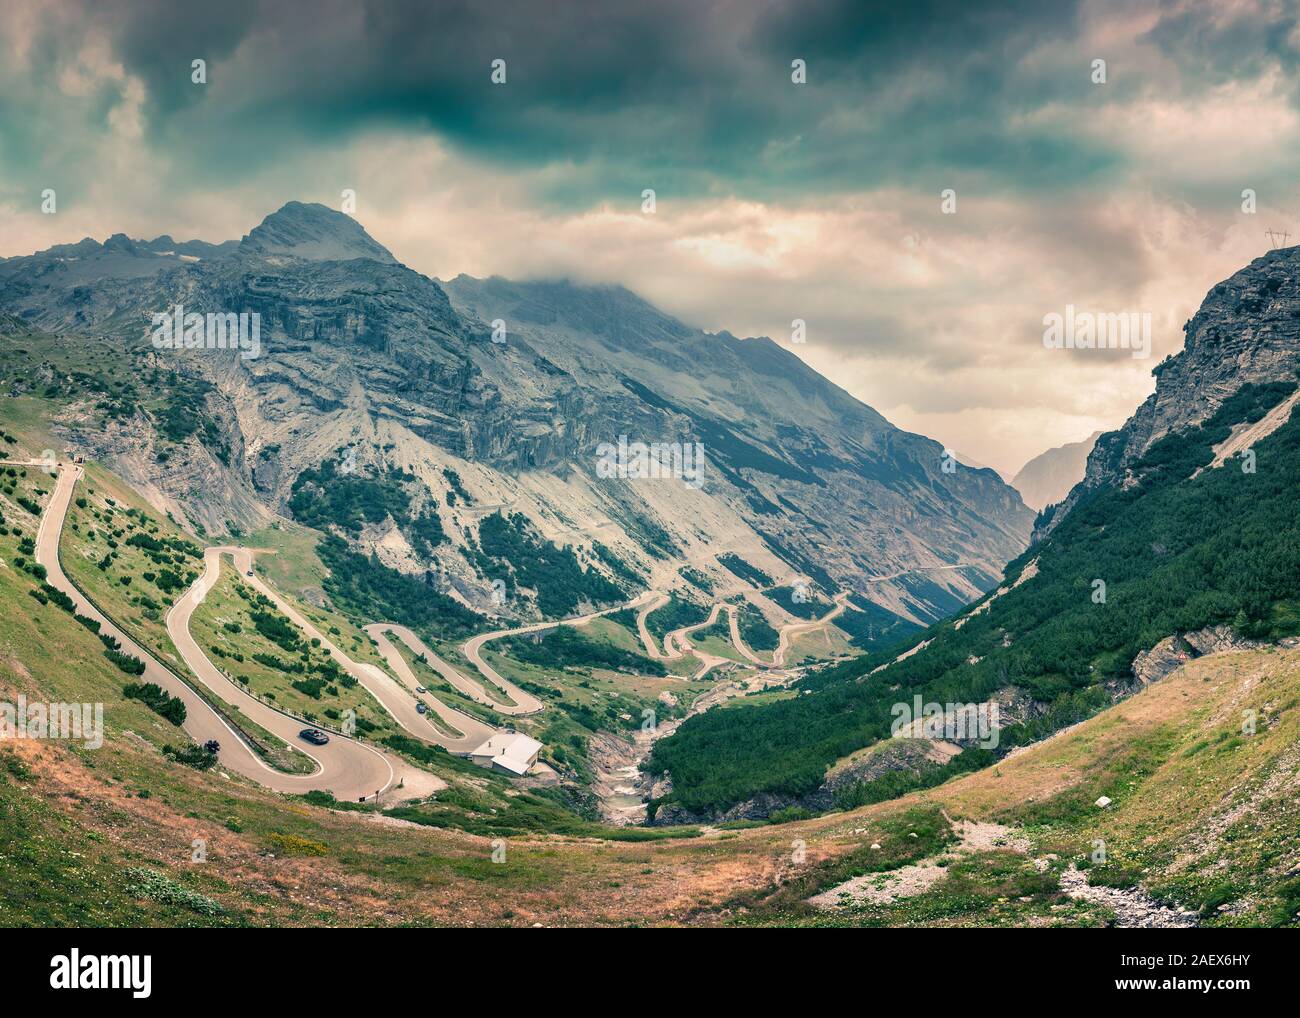 Vista dalla cima del famoso Italian Stelvio alta Alpine road, elevazione di 2,757 m sopra il livello del mare. Passo dello Stelvio, Alto Adige, provincia di Sondrio, O Foto Stock